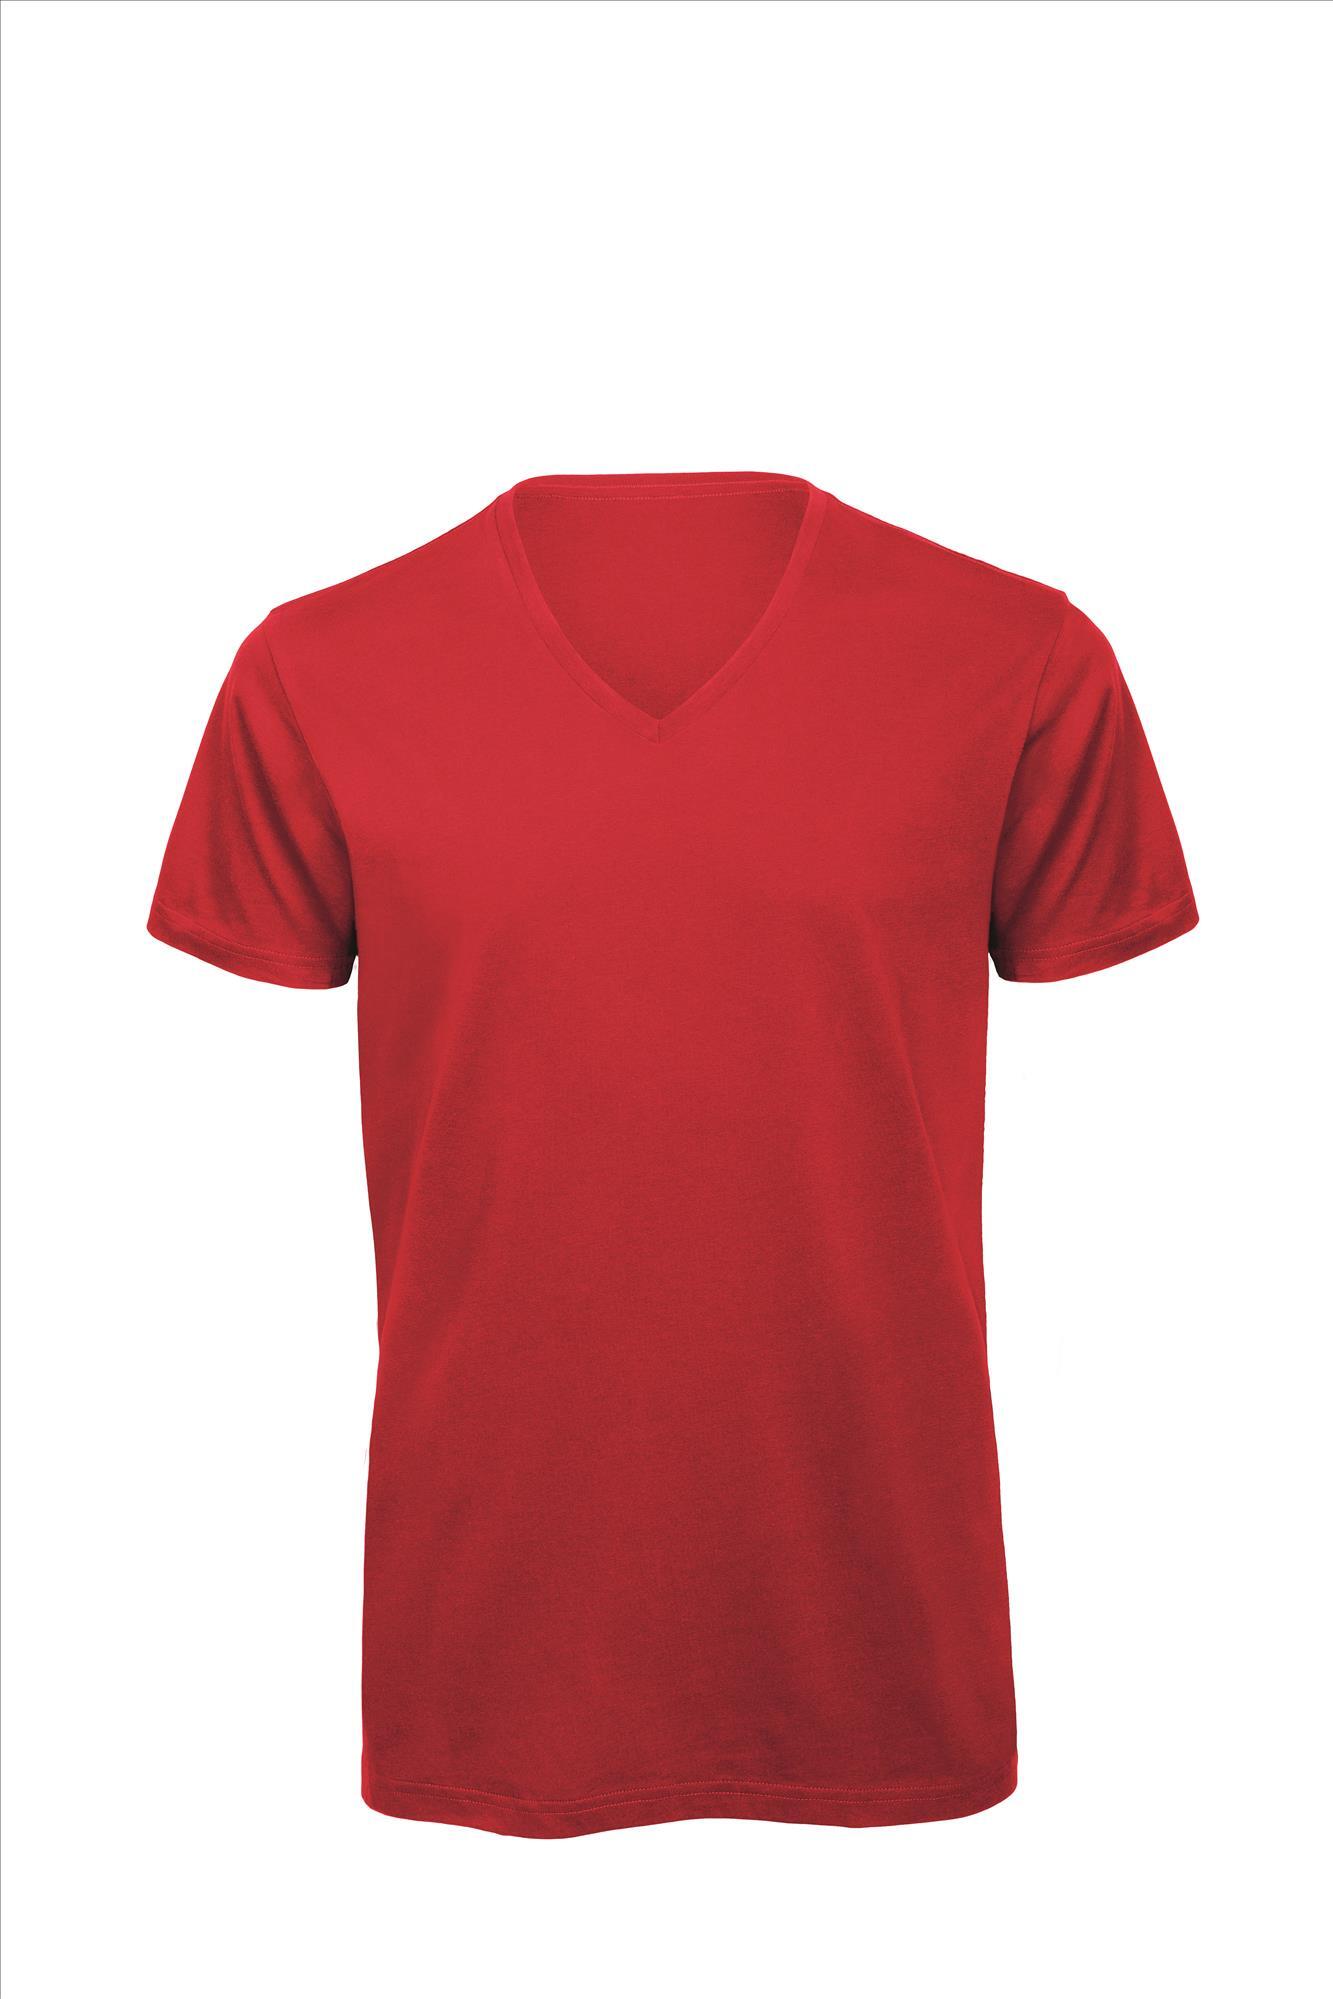 T-shirt met V-hals voor heren rood Luxe bio kwaliteit